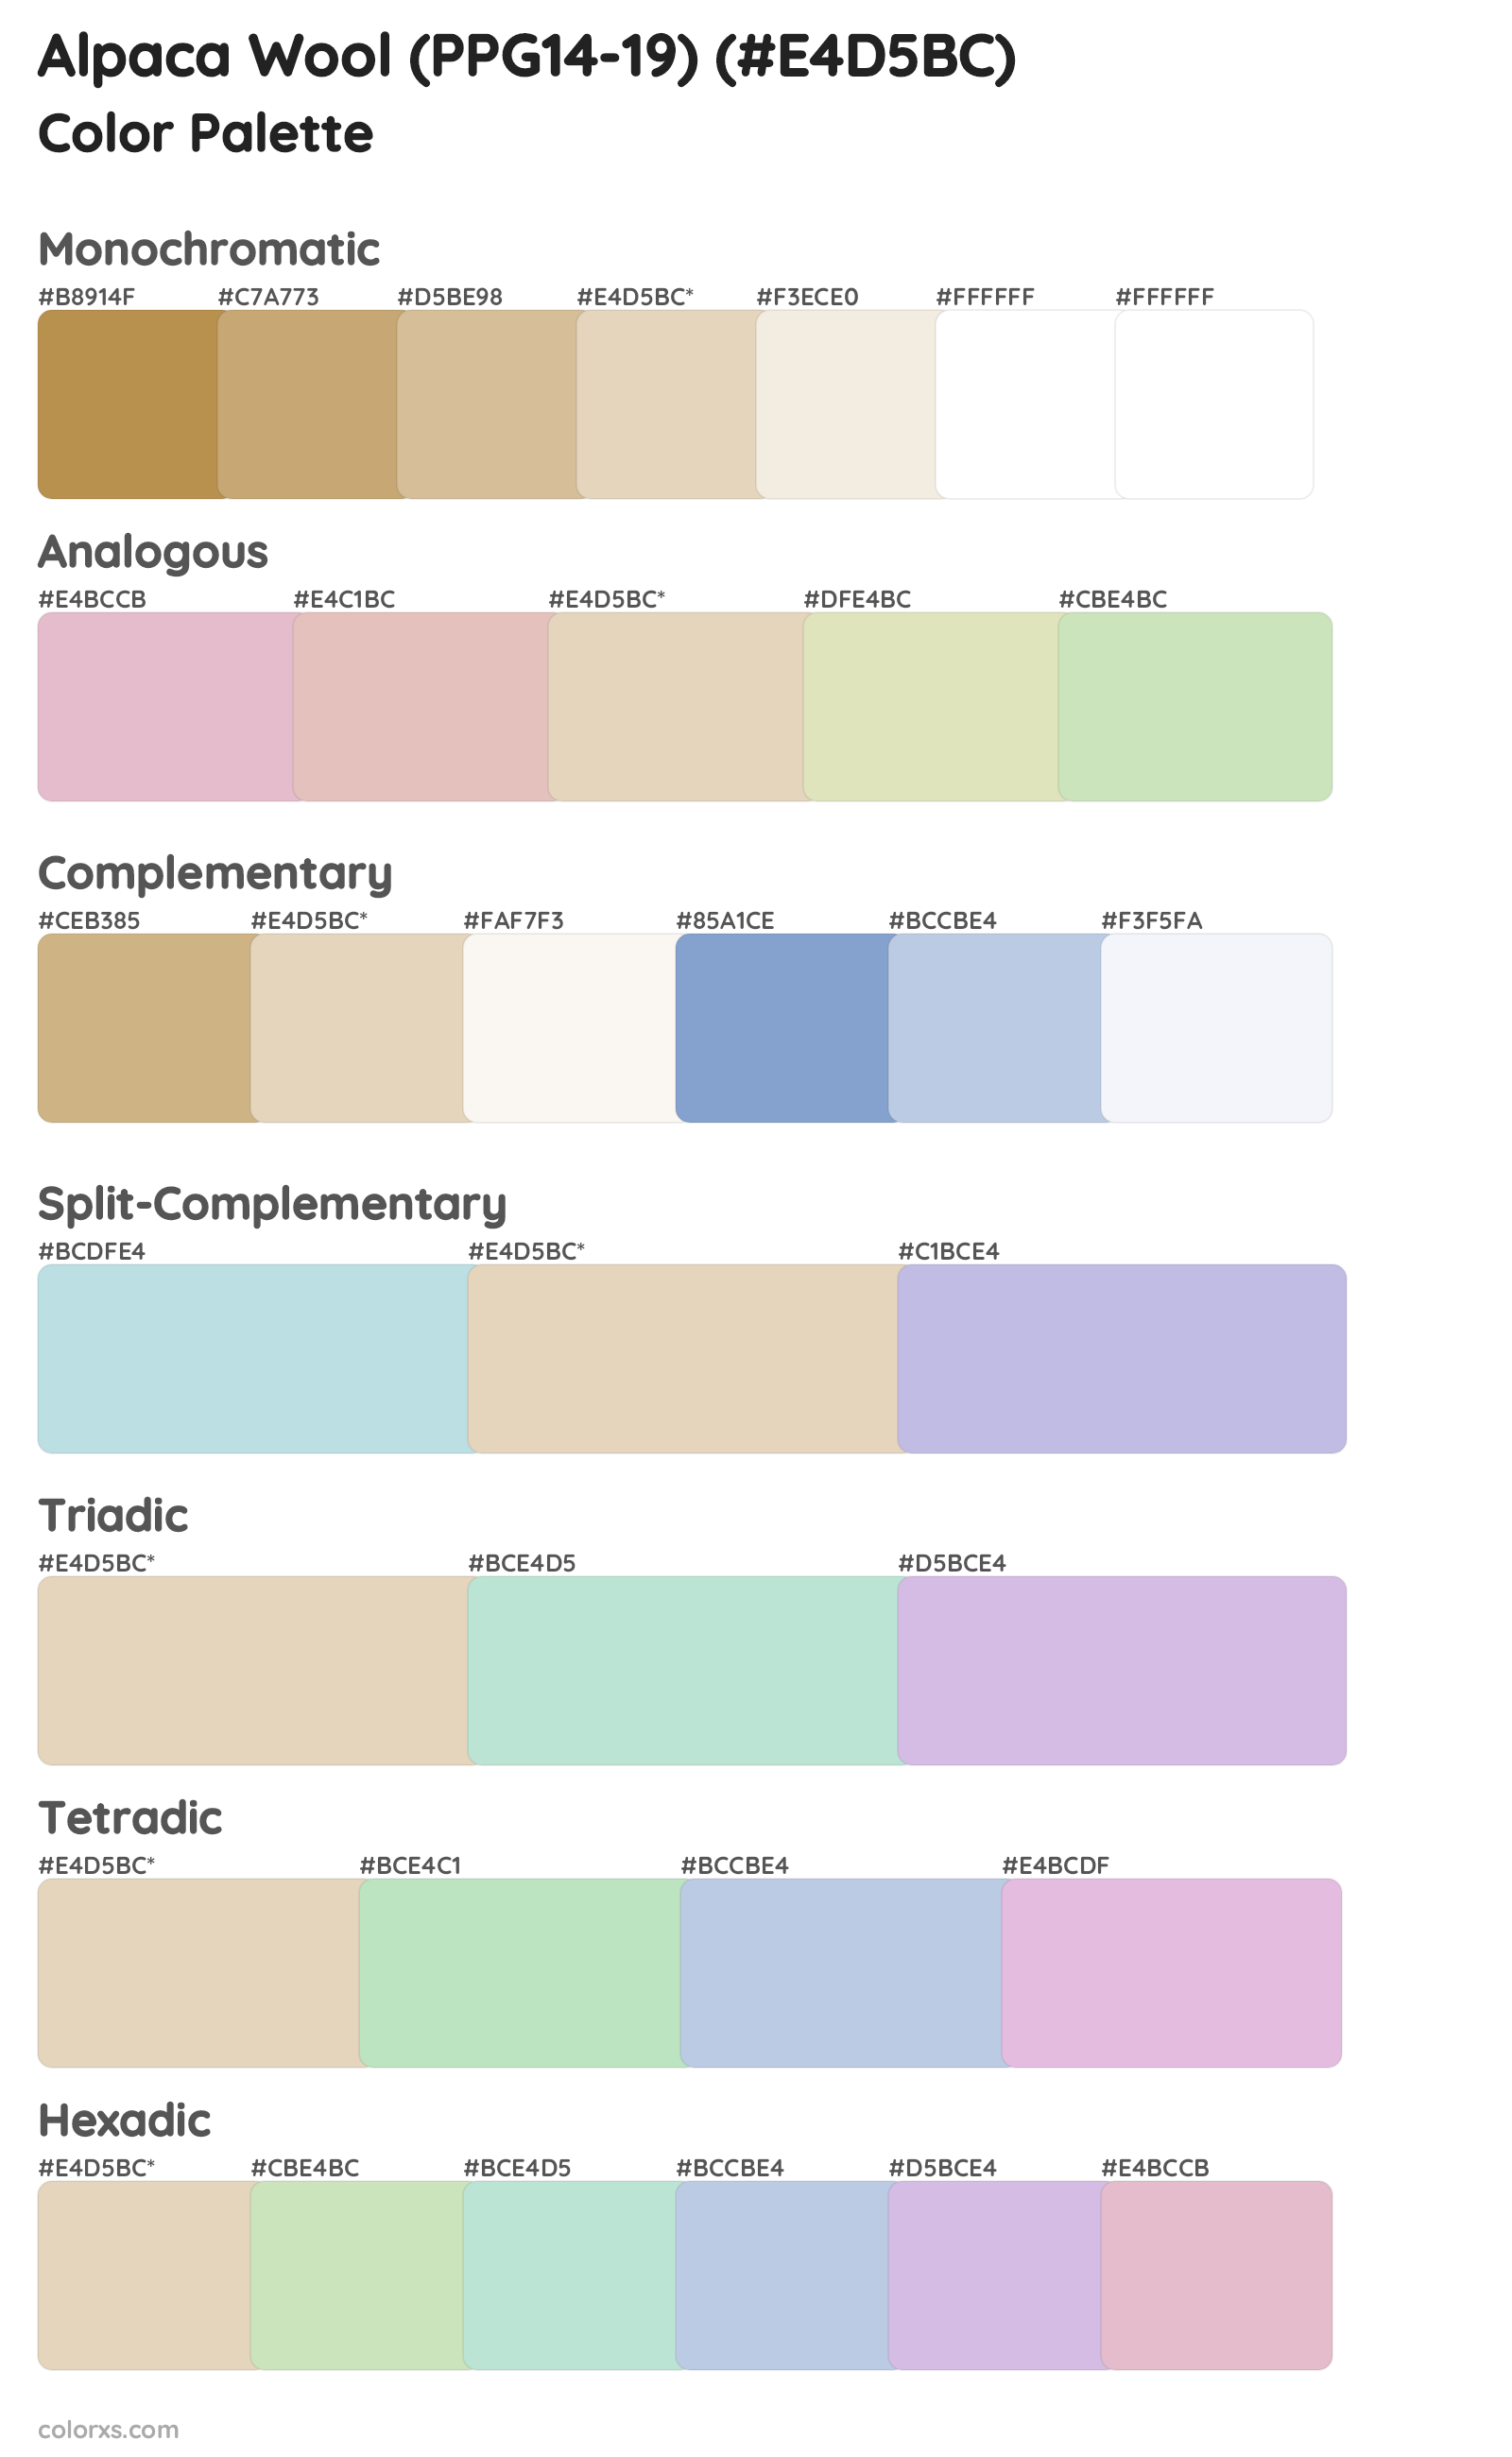 Alpaca Wool (PPG14-19) Color Scheme Palettes